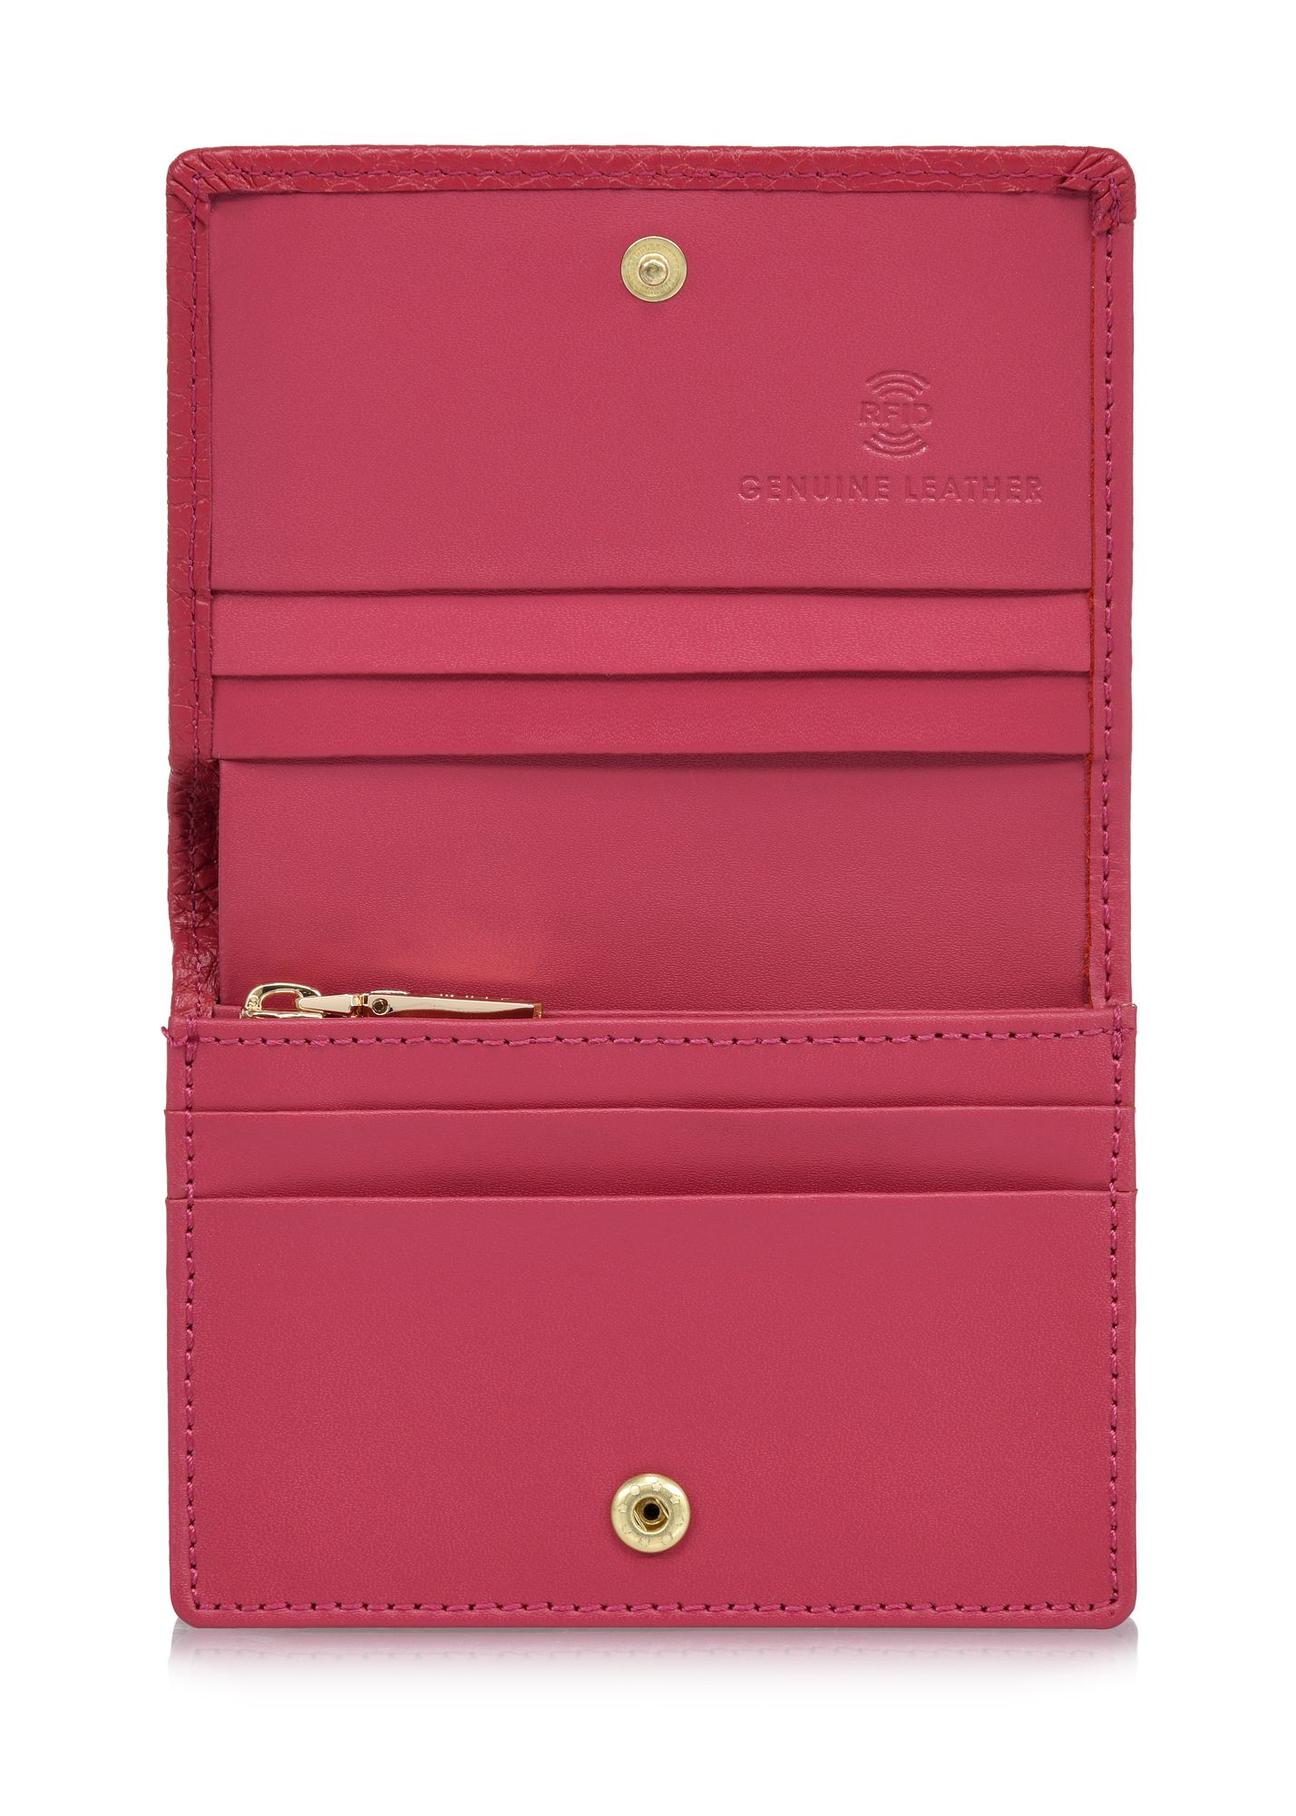 Różowy skórzany portfel damski z ochroną RFID PORES-0807RFID-34(W24)